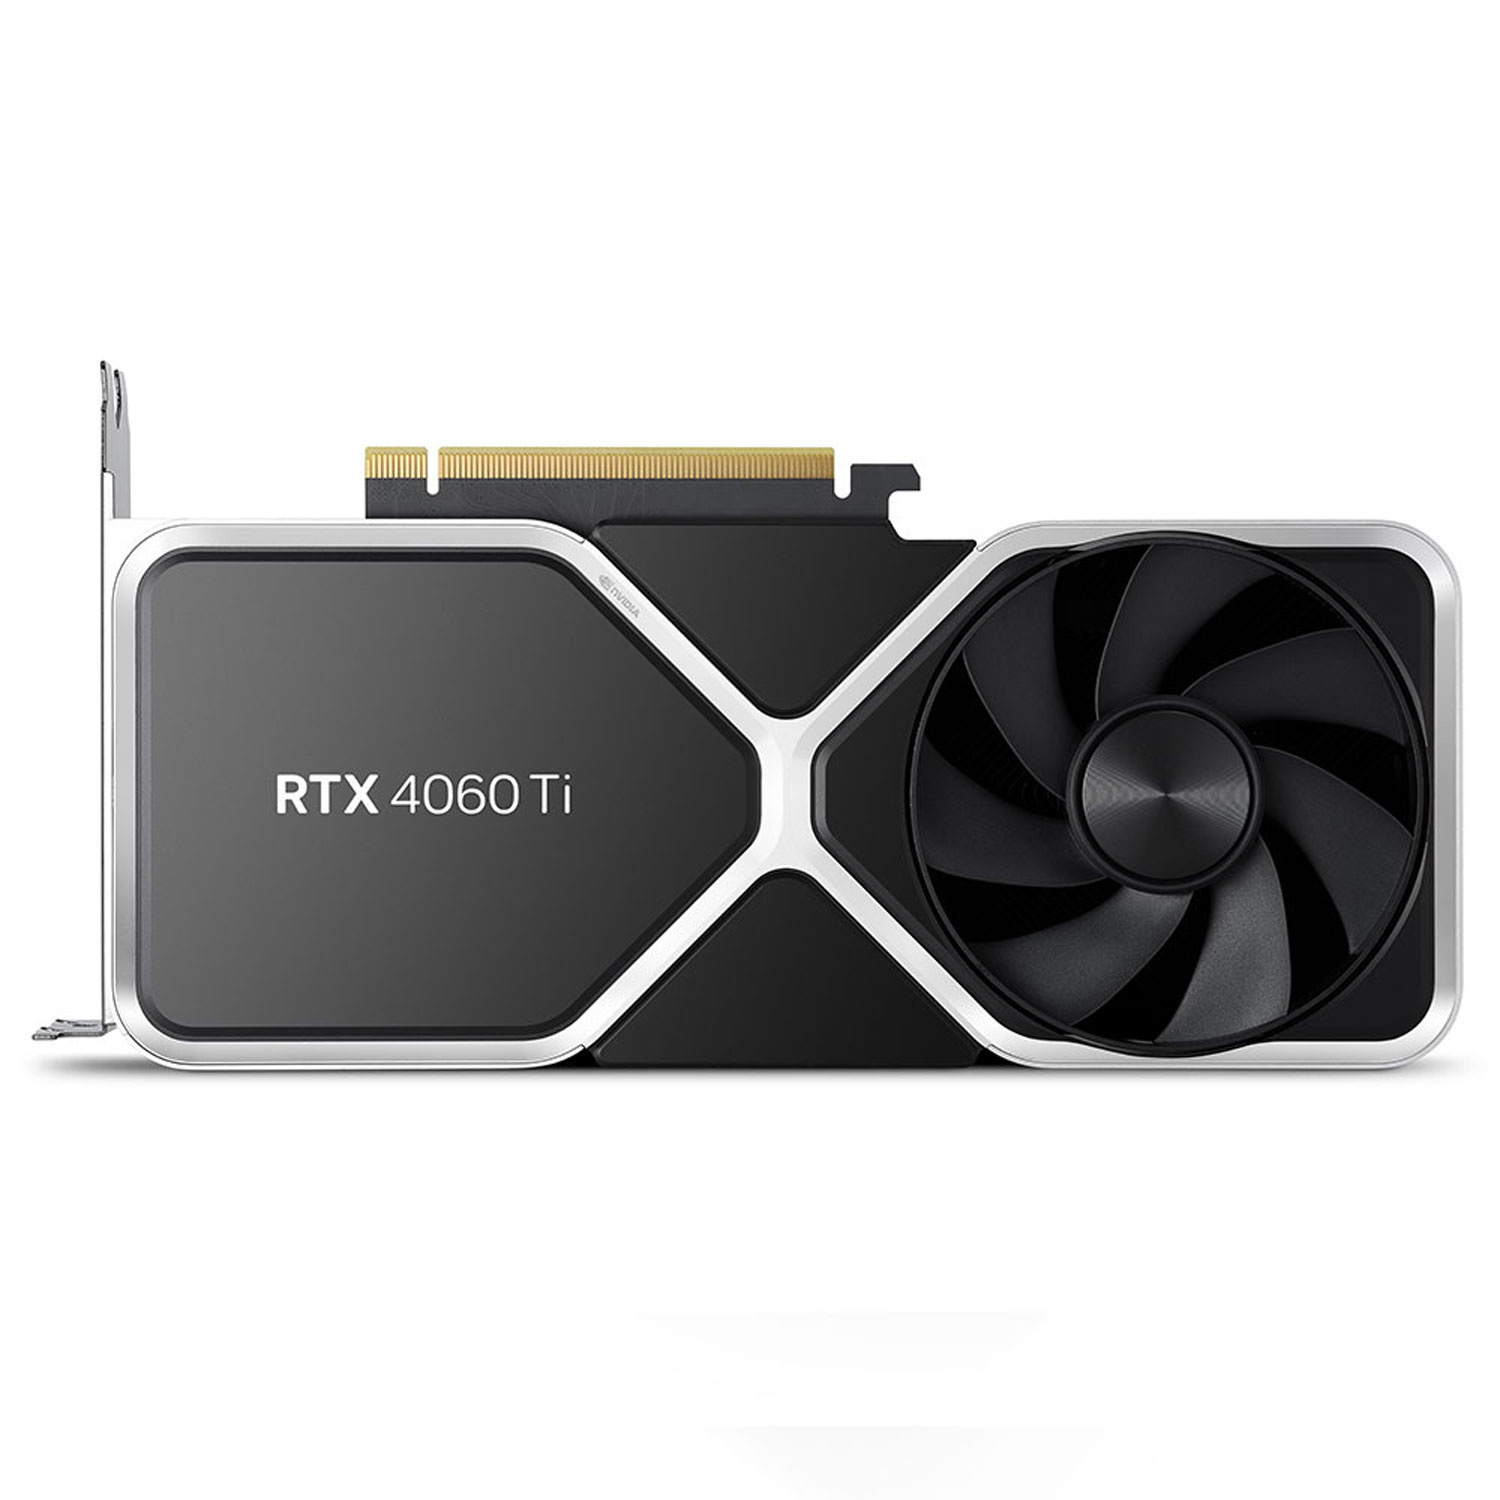 NVIDIA GeForce RTX 4060 Ti 8GB GDDR6 Video Card